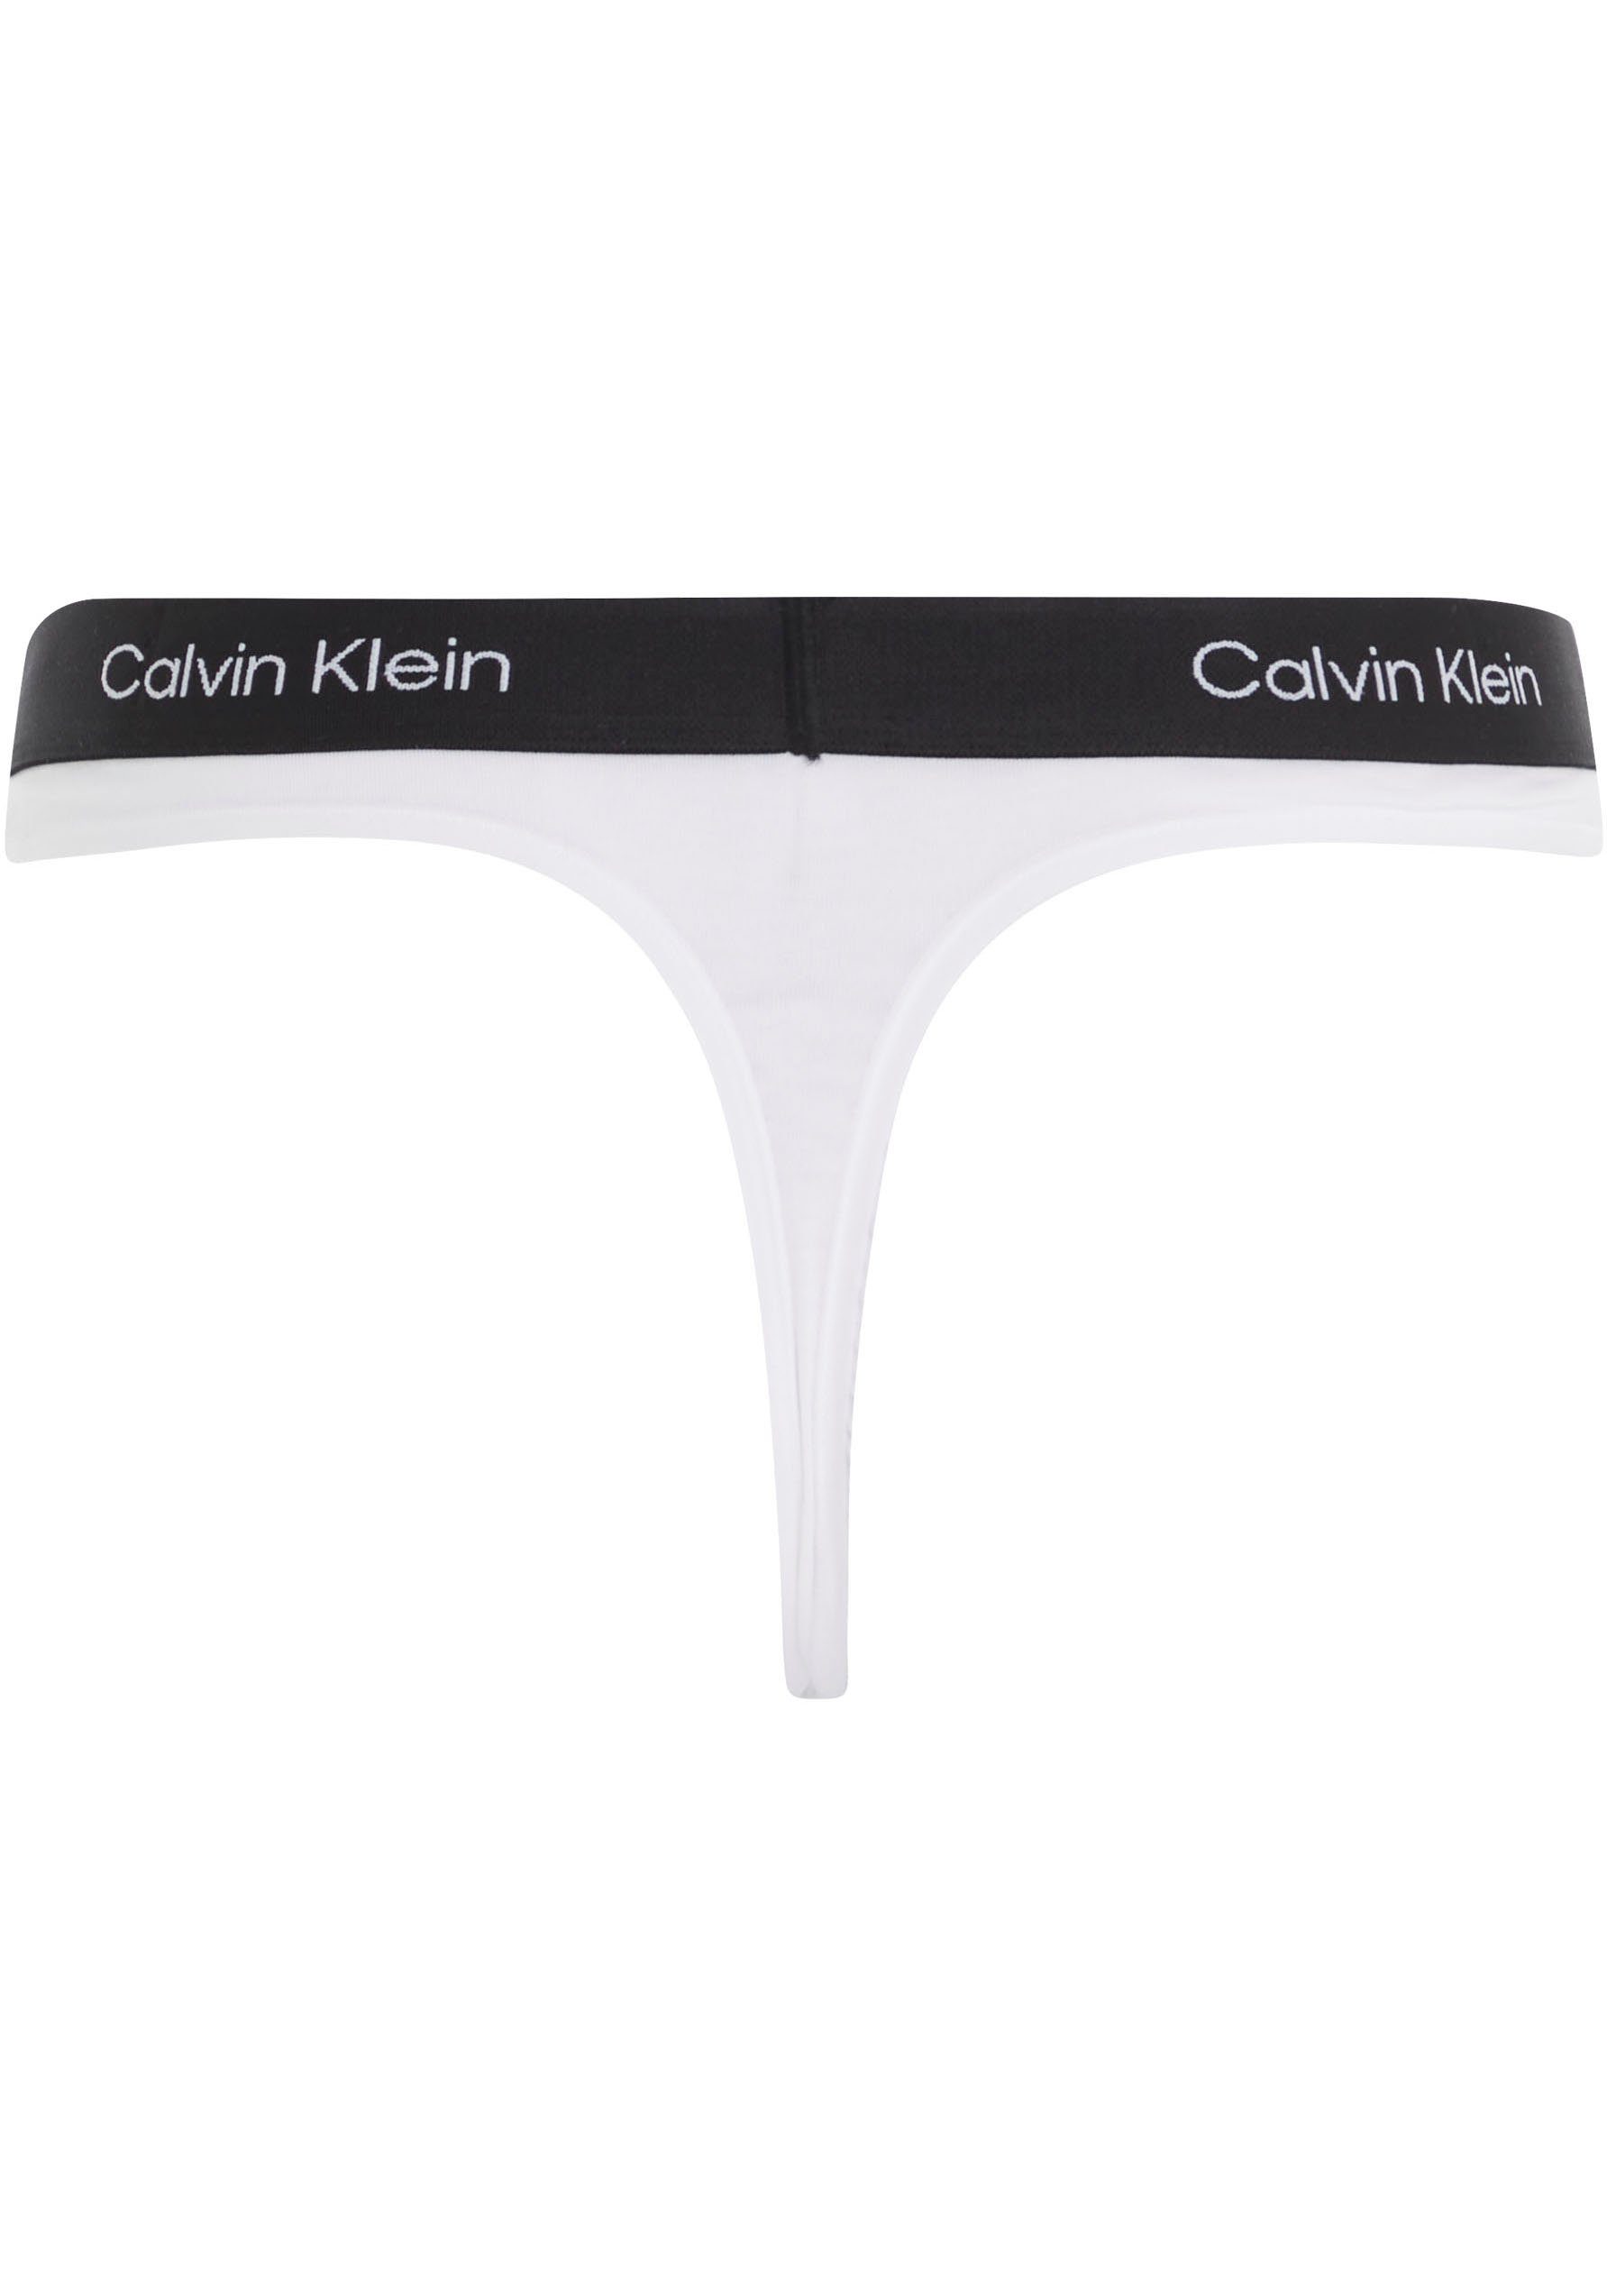 Calvin Klein MODERN mit THONG Underwear Alloverprint WHITE T-String